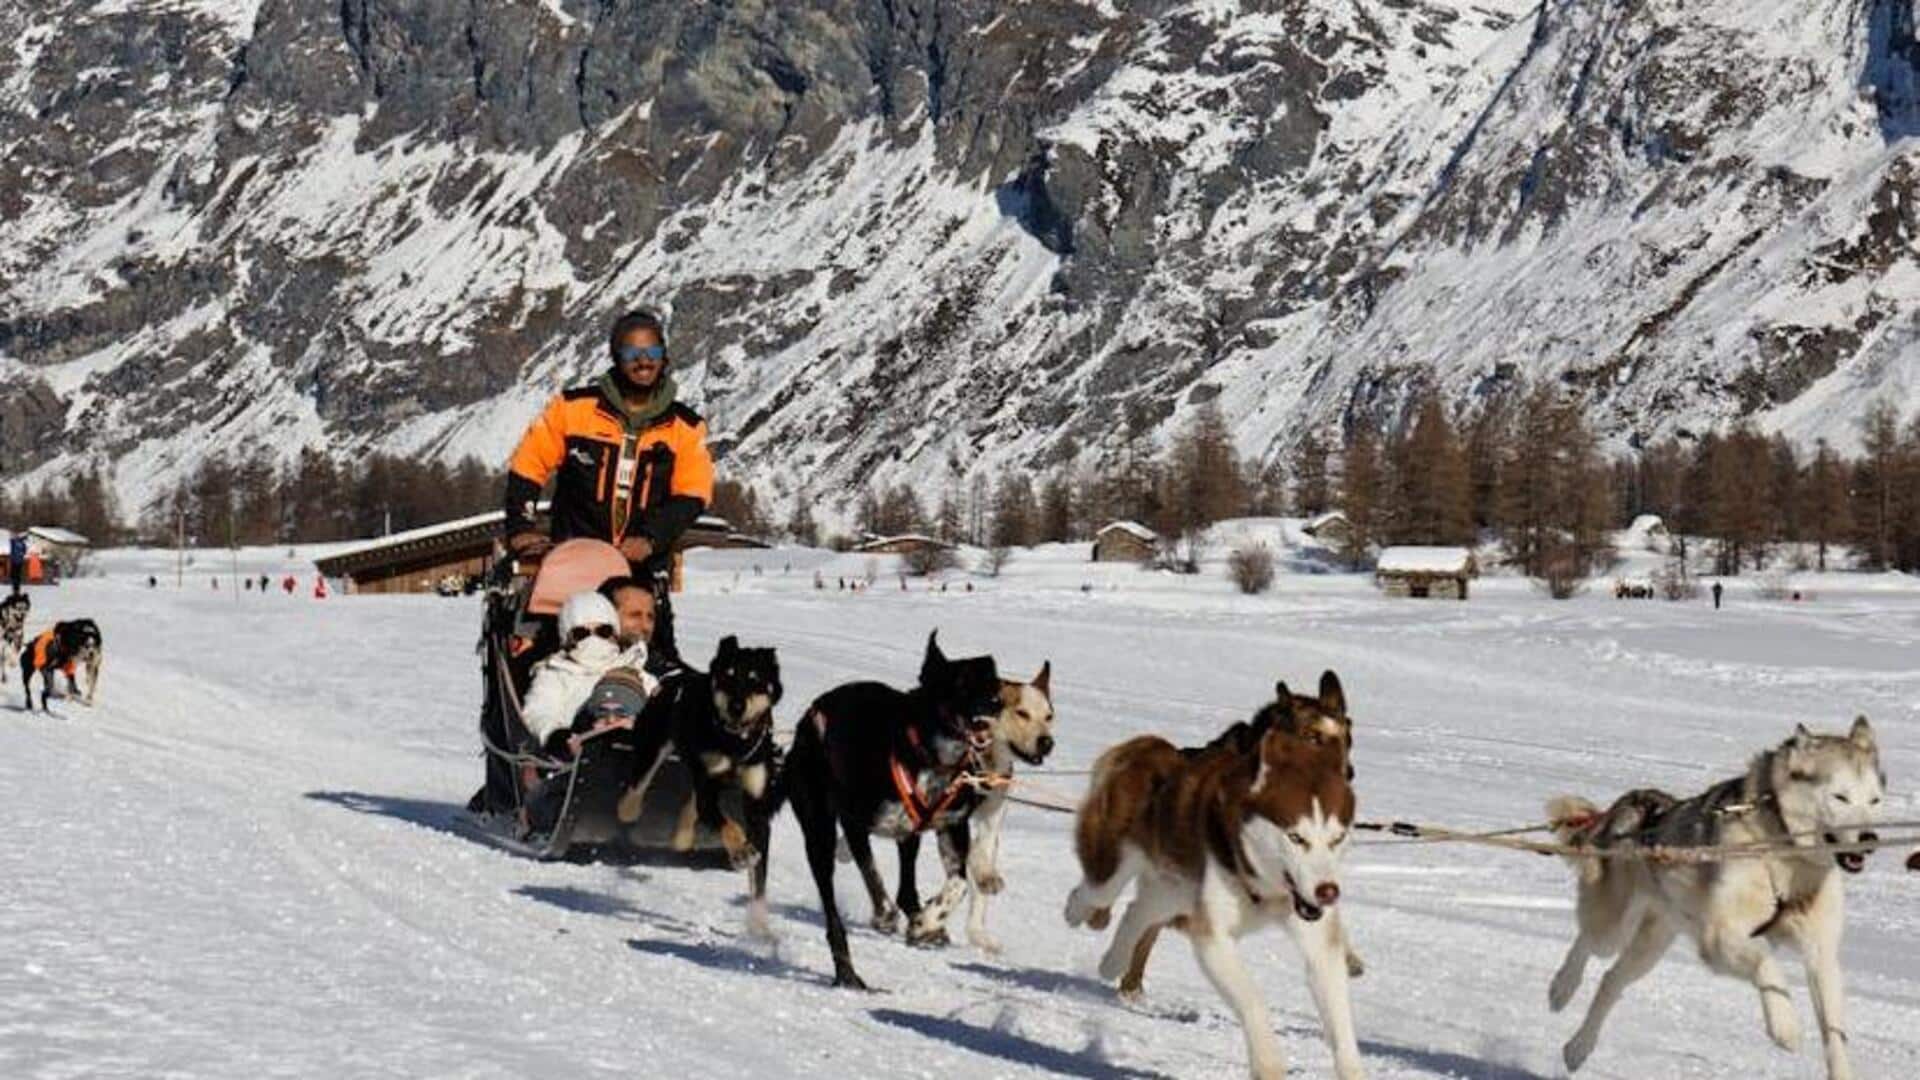 Enjoy the thrills of dog sledding adventure at Ushuaia, Argentina